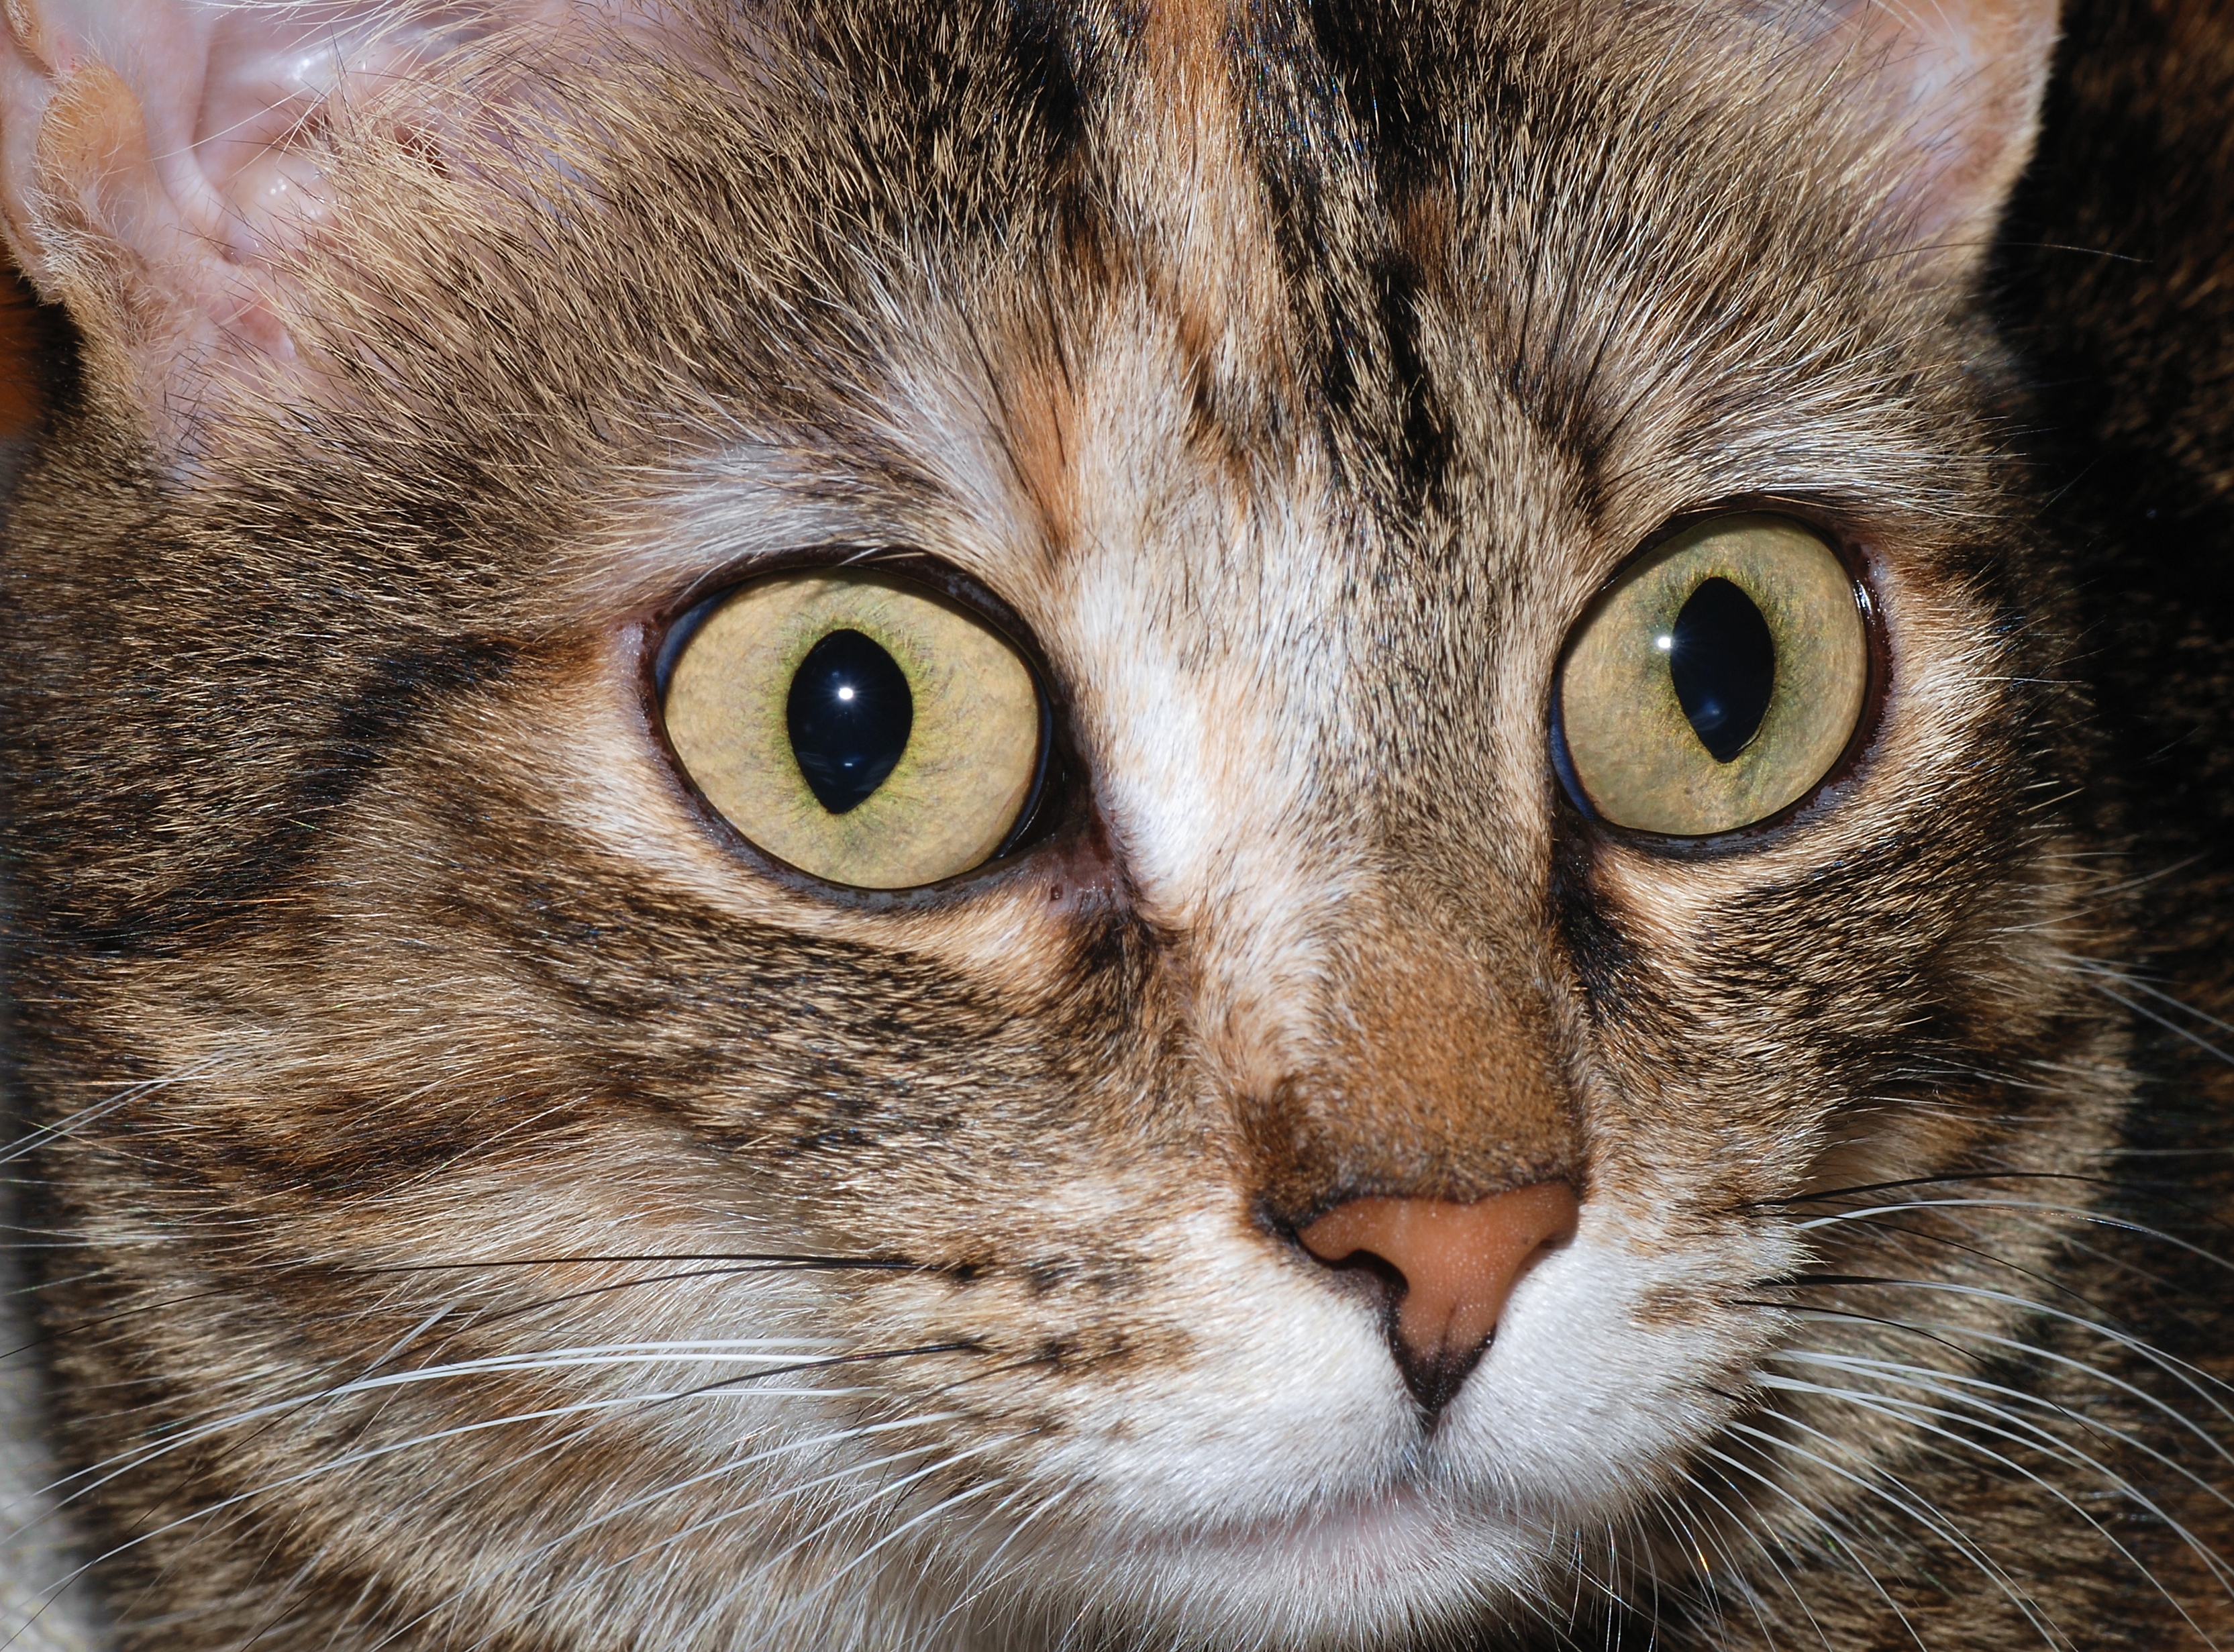 cat eyes Archives - Cat Diabetes & Cat Care